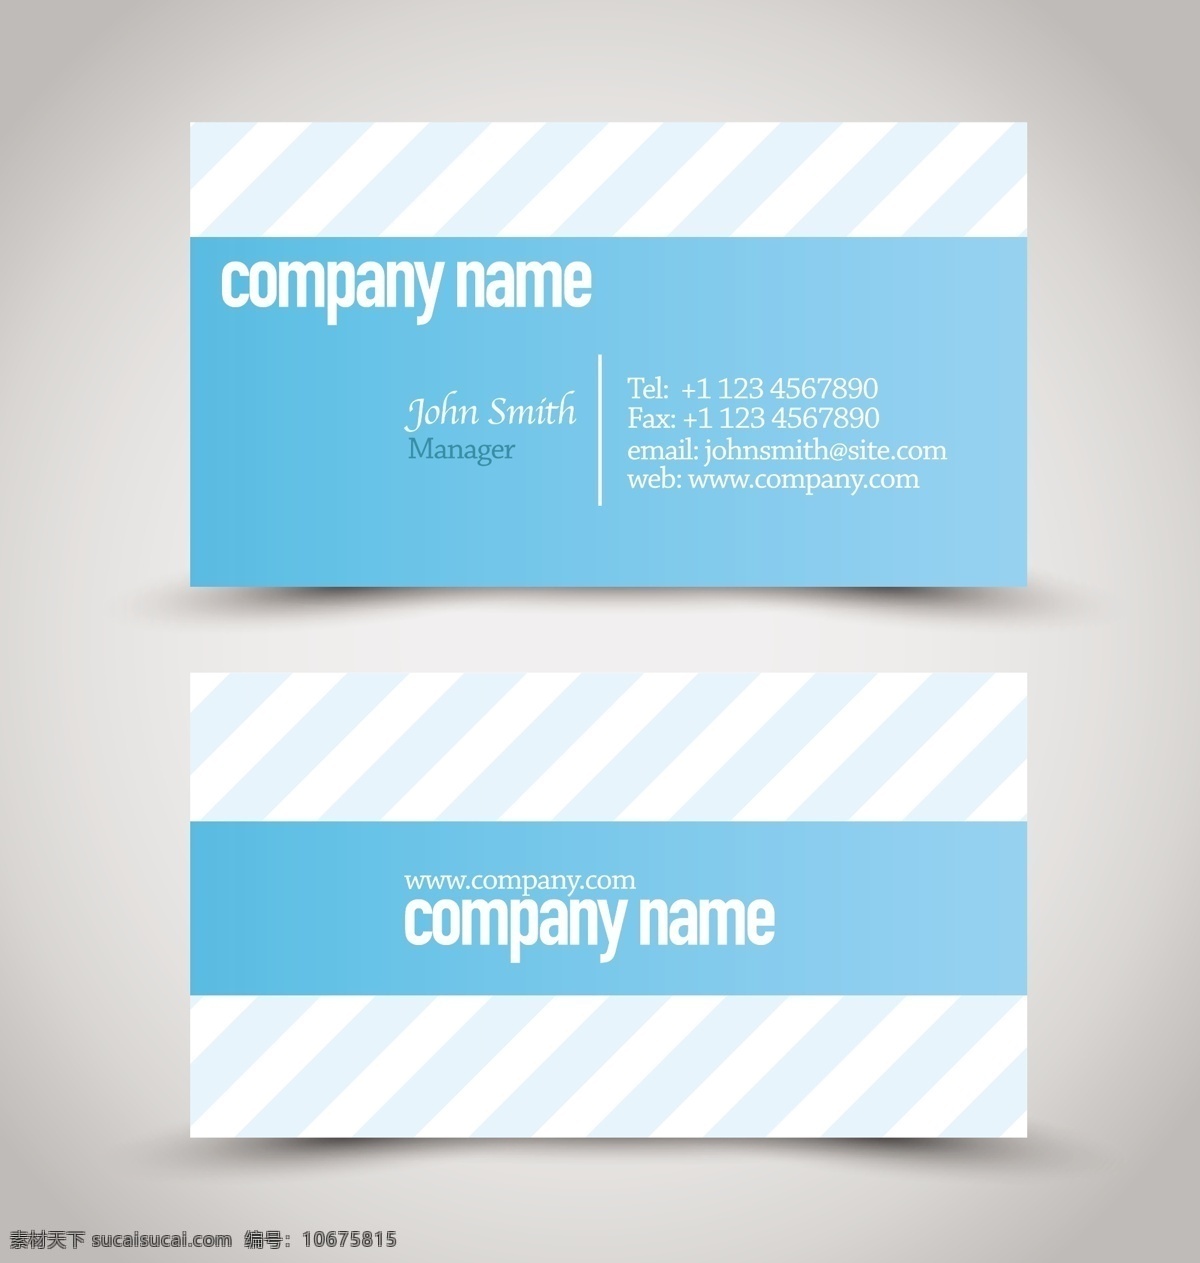 时尚 商务 名片 矢量 模板 卡片 矢量素材 设计素材 蓝色 条纹